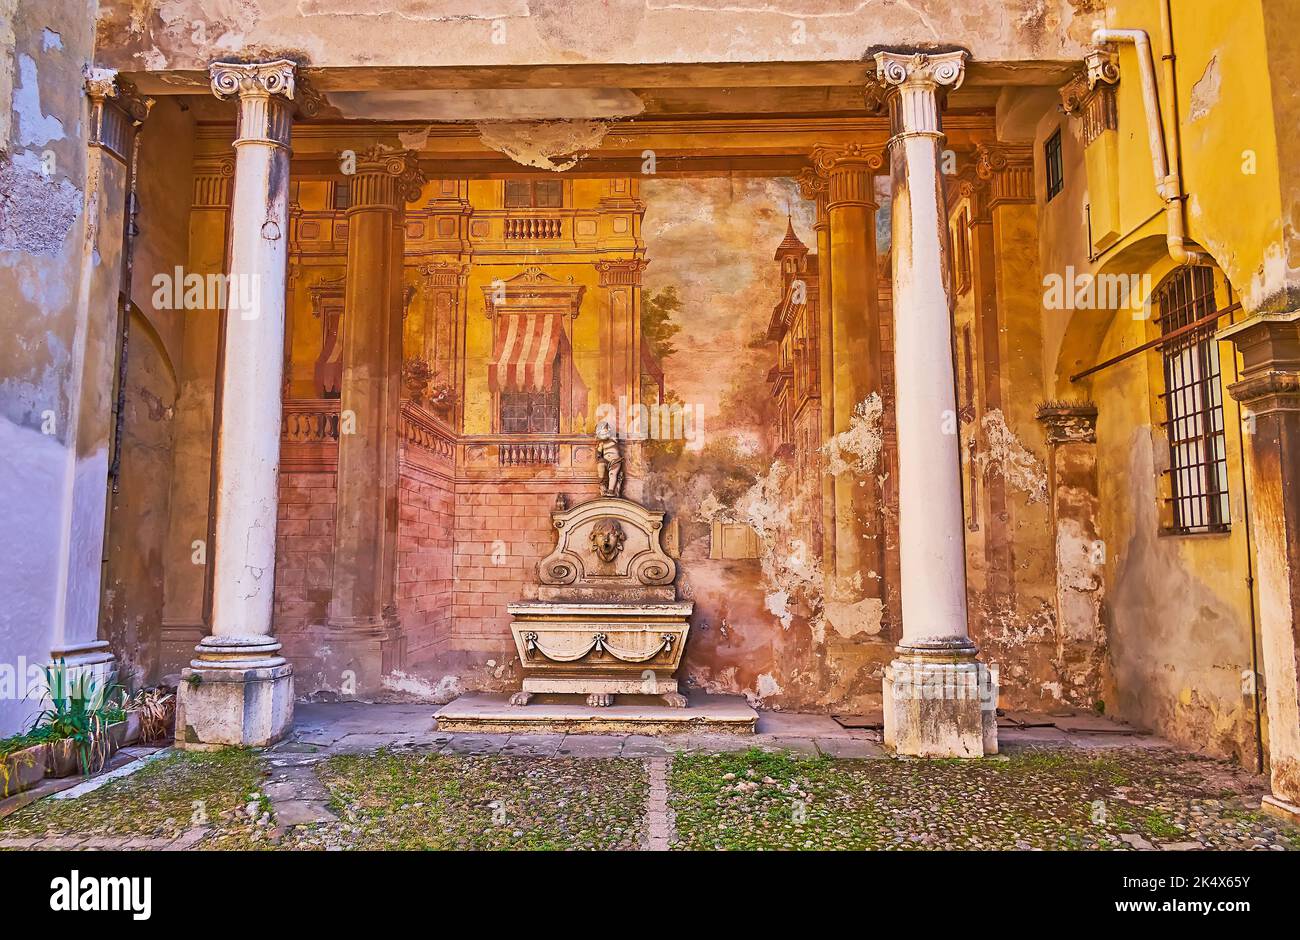 Il cortile di palazzo storico con affreschi medievali conservati e fontana scolpita, decorato con angelo, Brescia, Lombardia, Italia Foto Stock